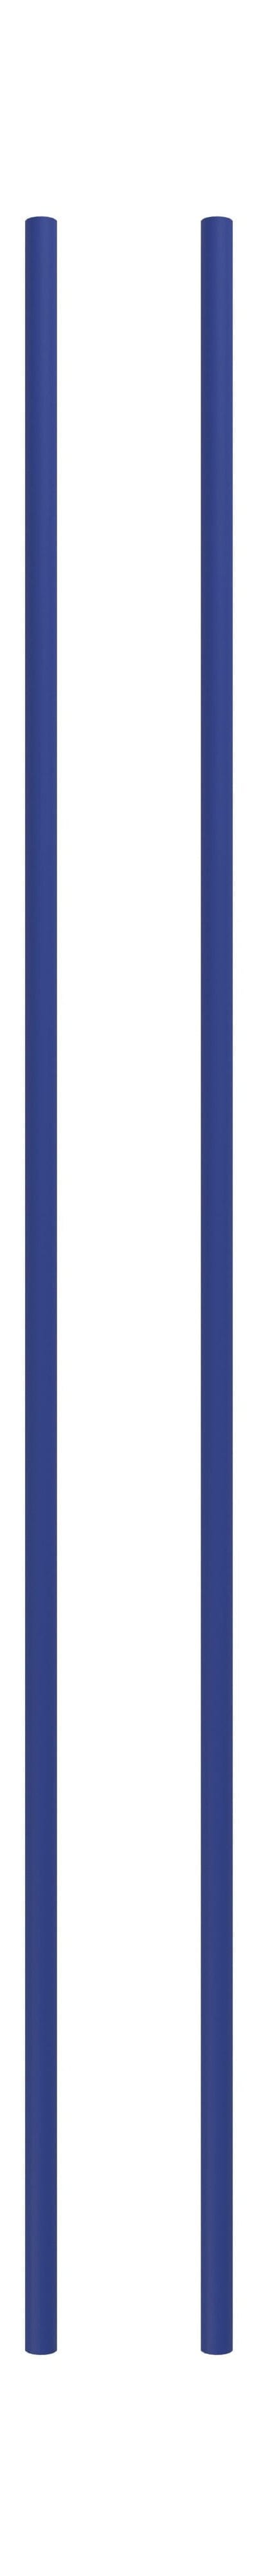 Sistema di scaffalature Moebe/gamba di scaffalature a parete 115 cm Blu intenso, set di 2